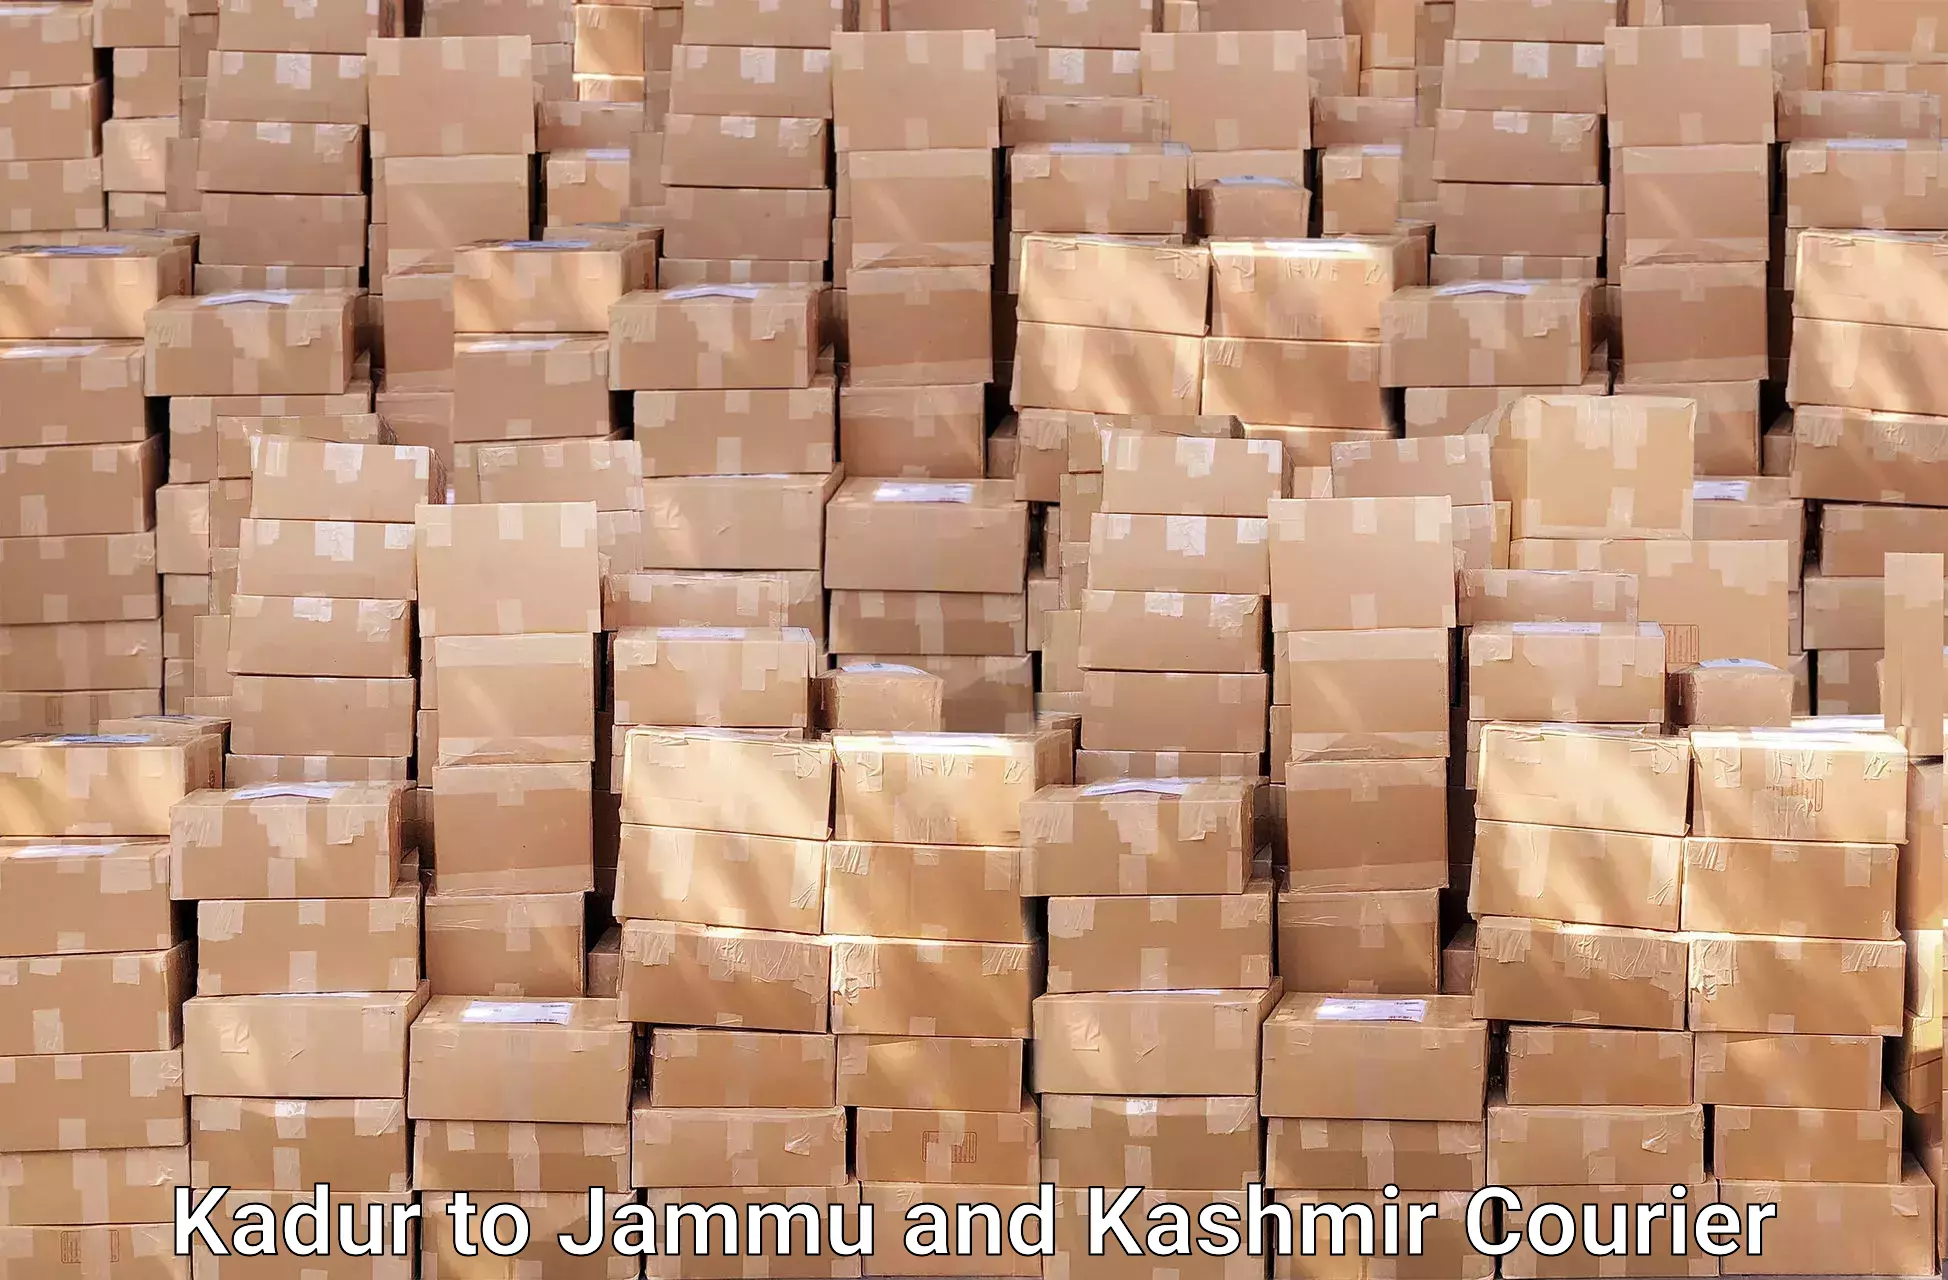 Furniture transport experts Kadur to Jammu and Kashmir